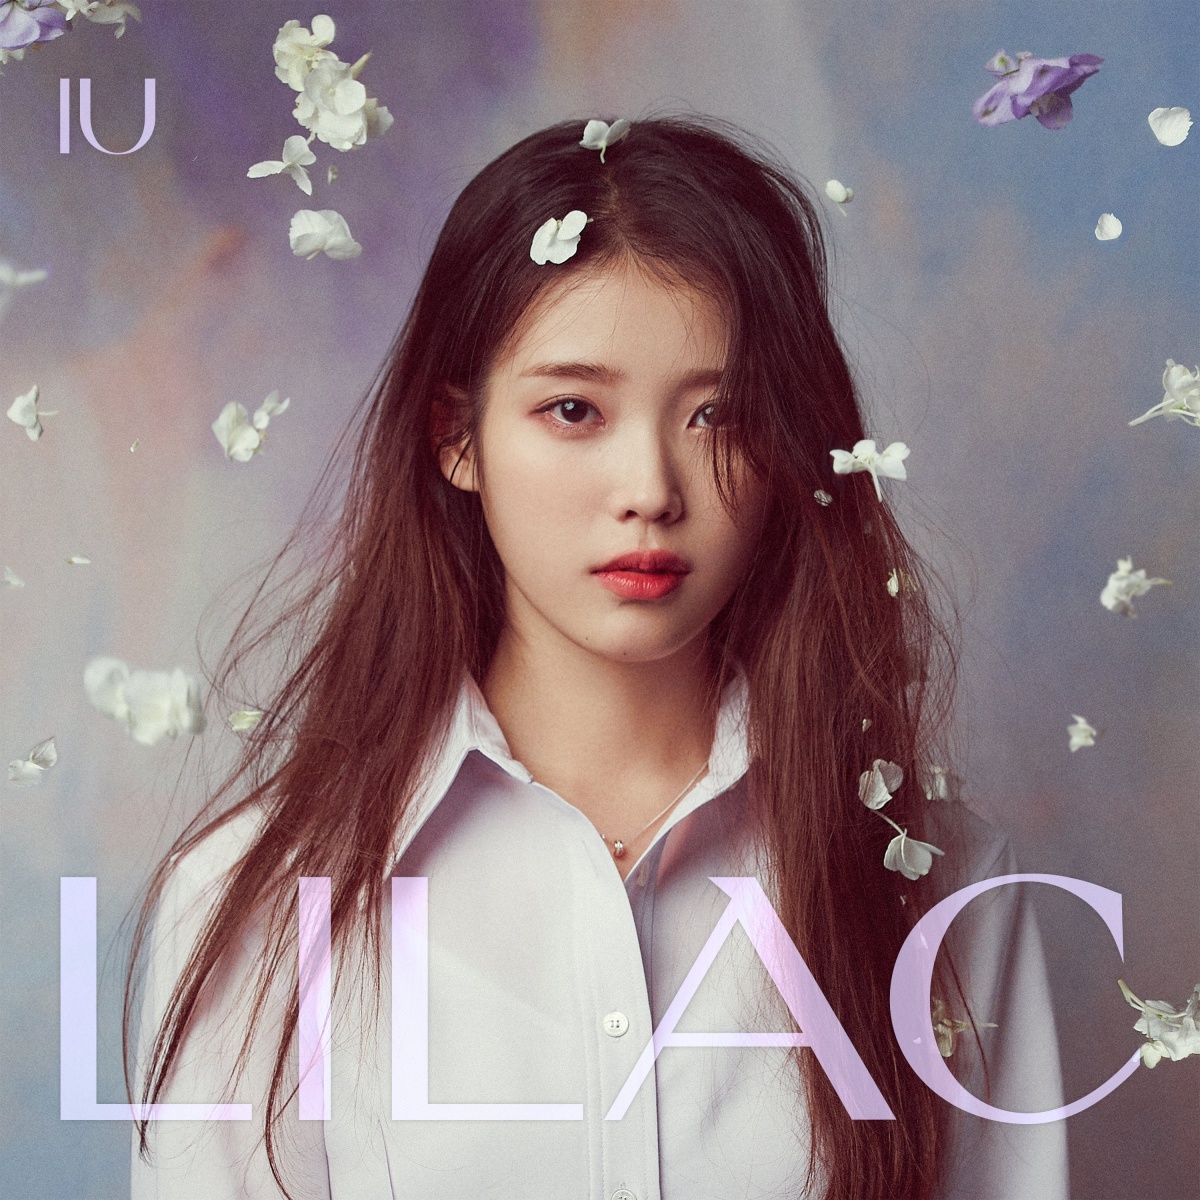 IU's Green, Springtime Lilac → Regular 5th album 'LILAC' veiled